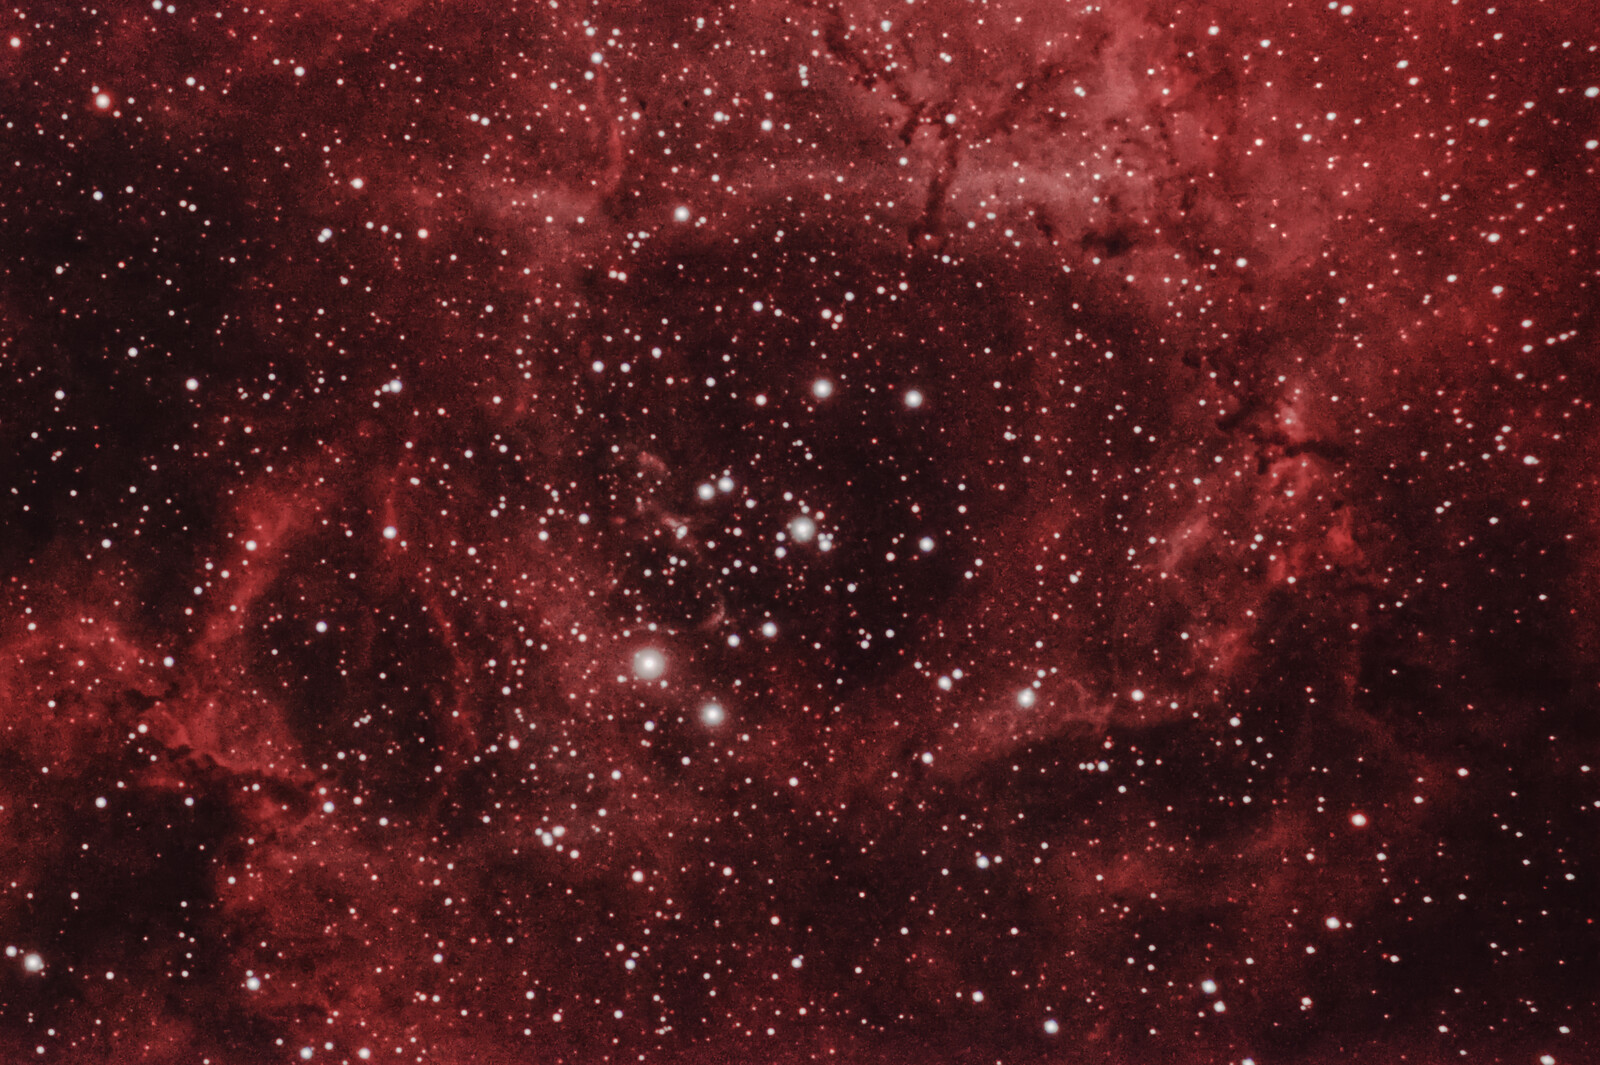 NGC2237 - Rosetta nebula